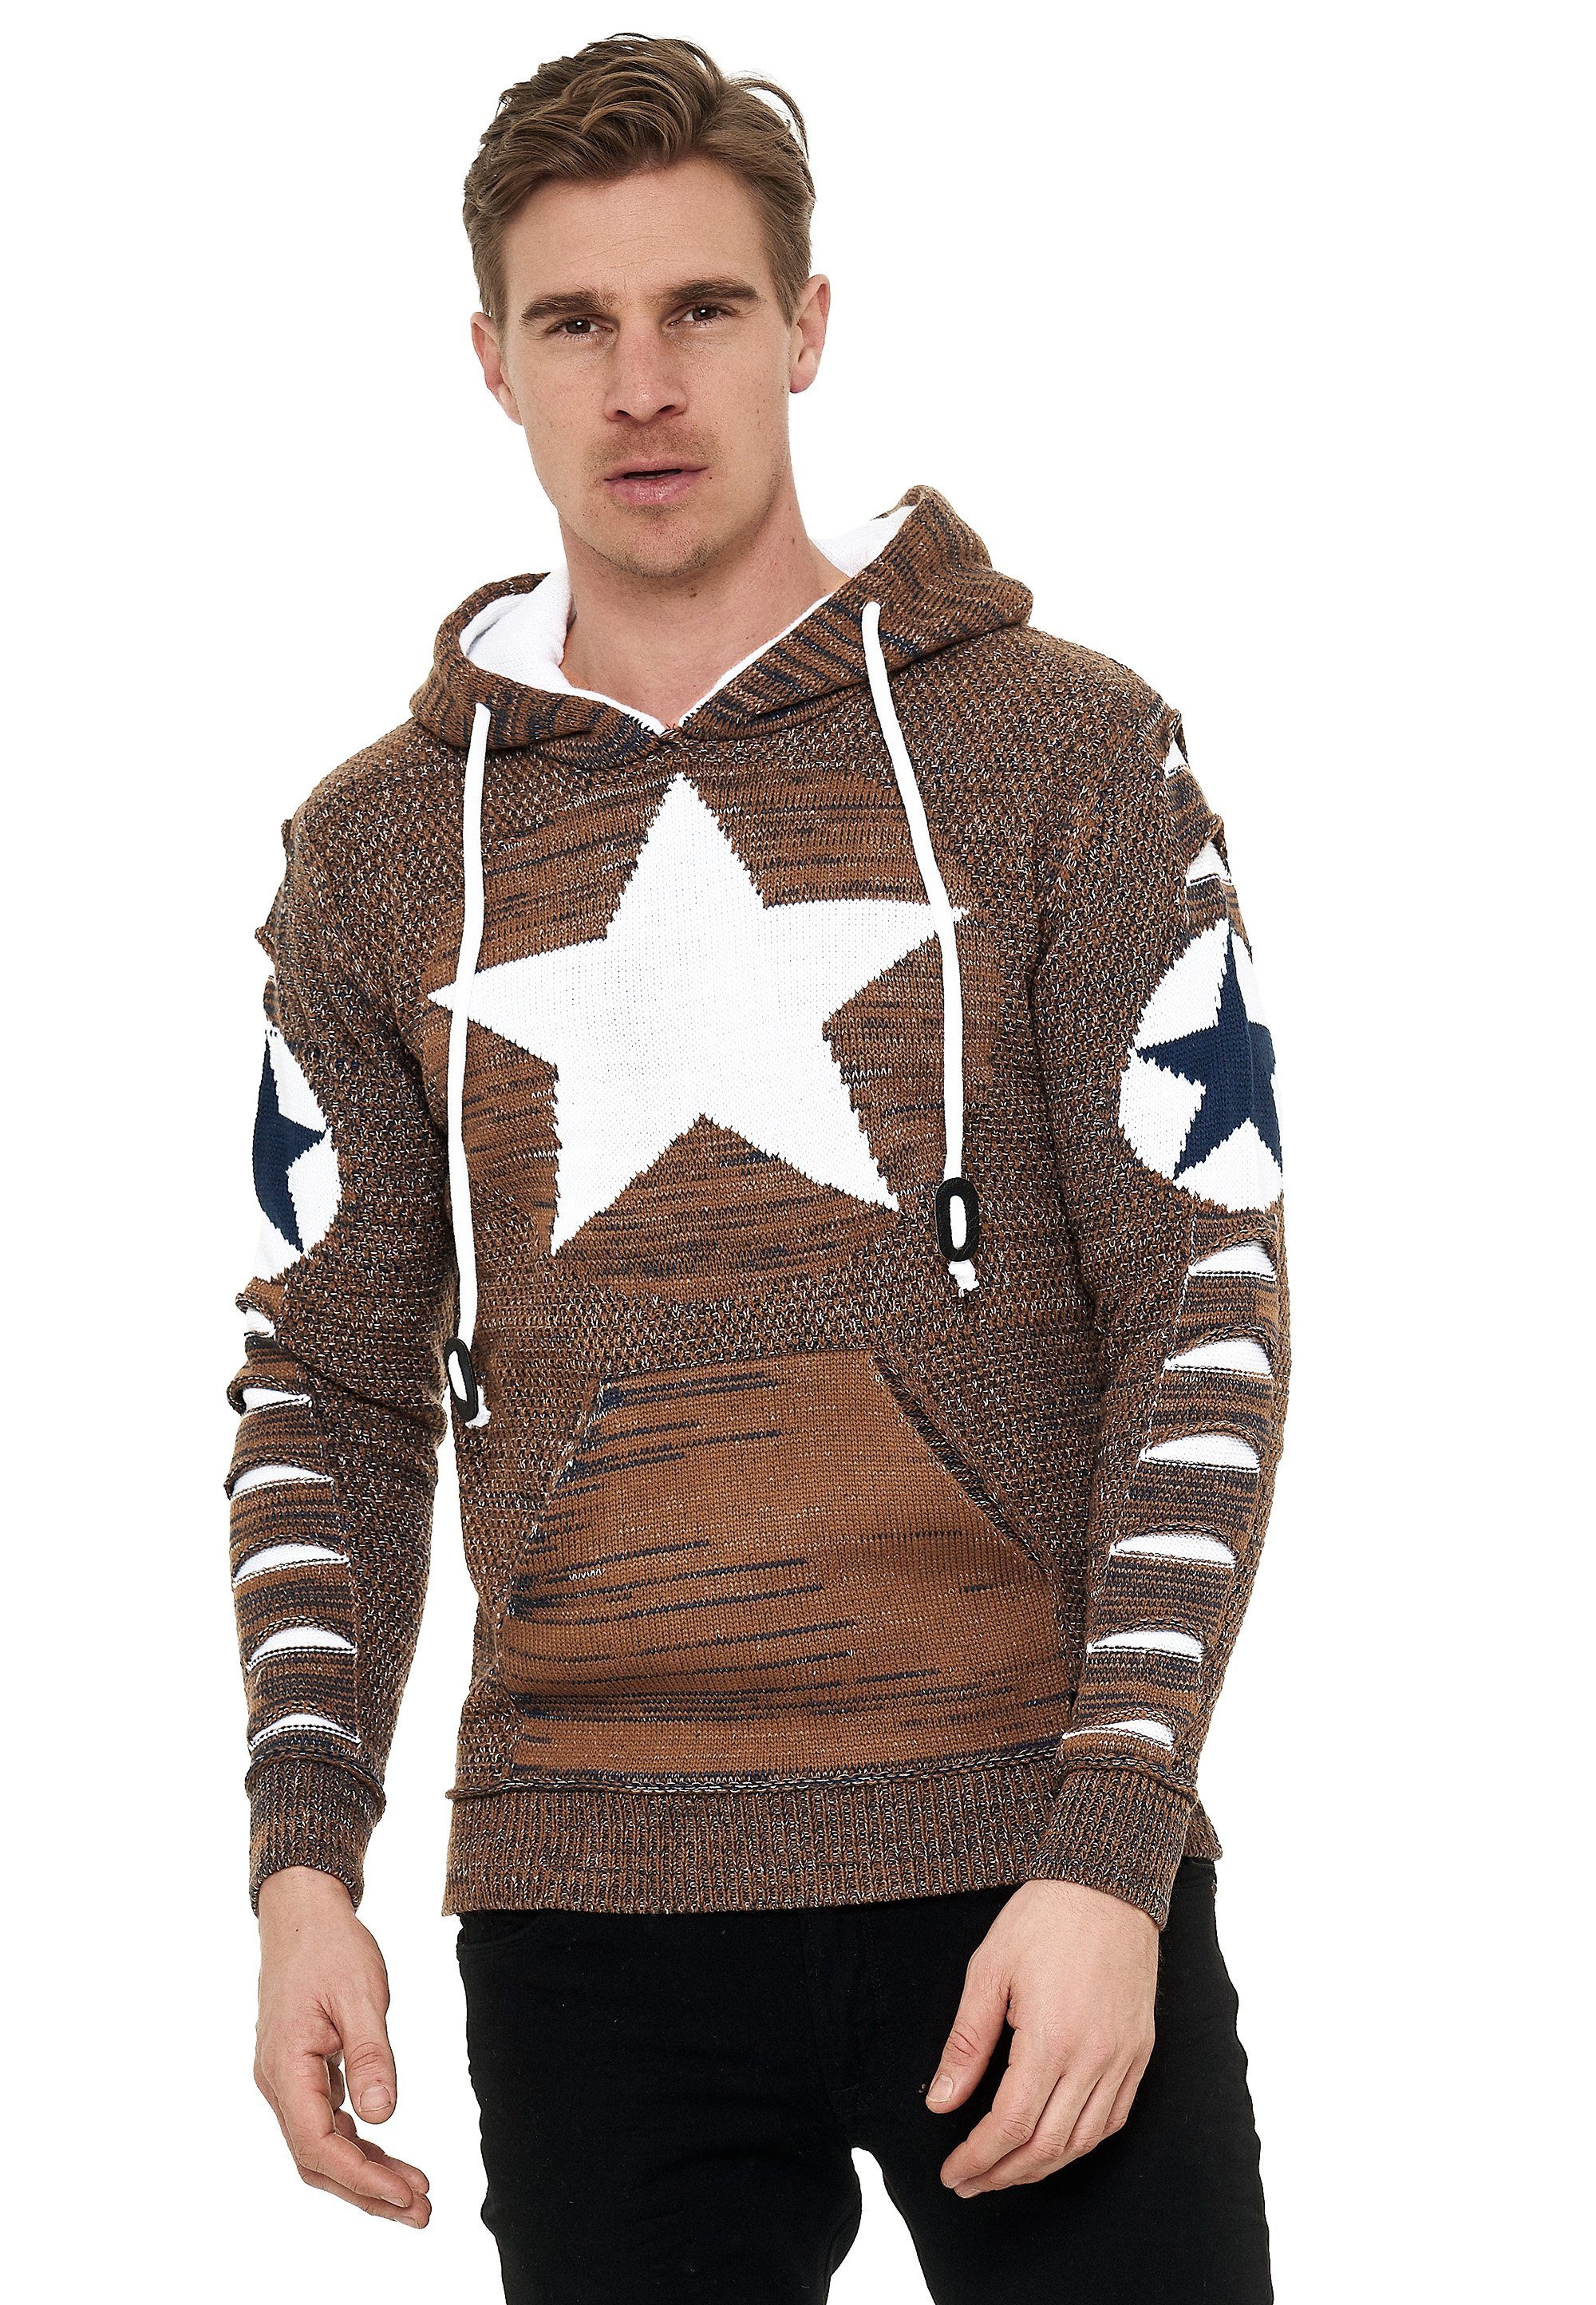 Rusty Neal Kapuzensweatshirt mit großem Stern-Design online kaufen | OTTO